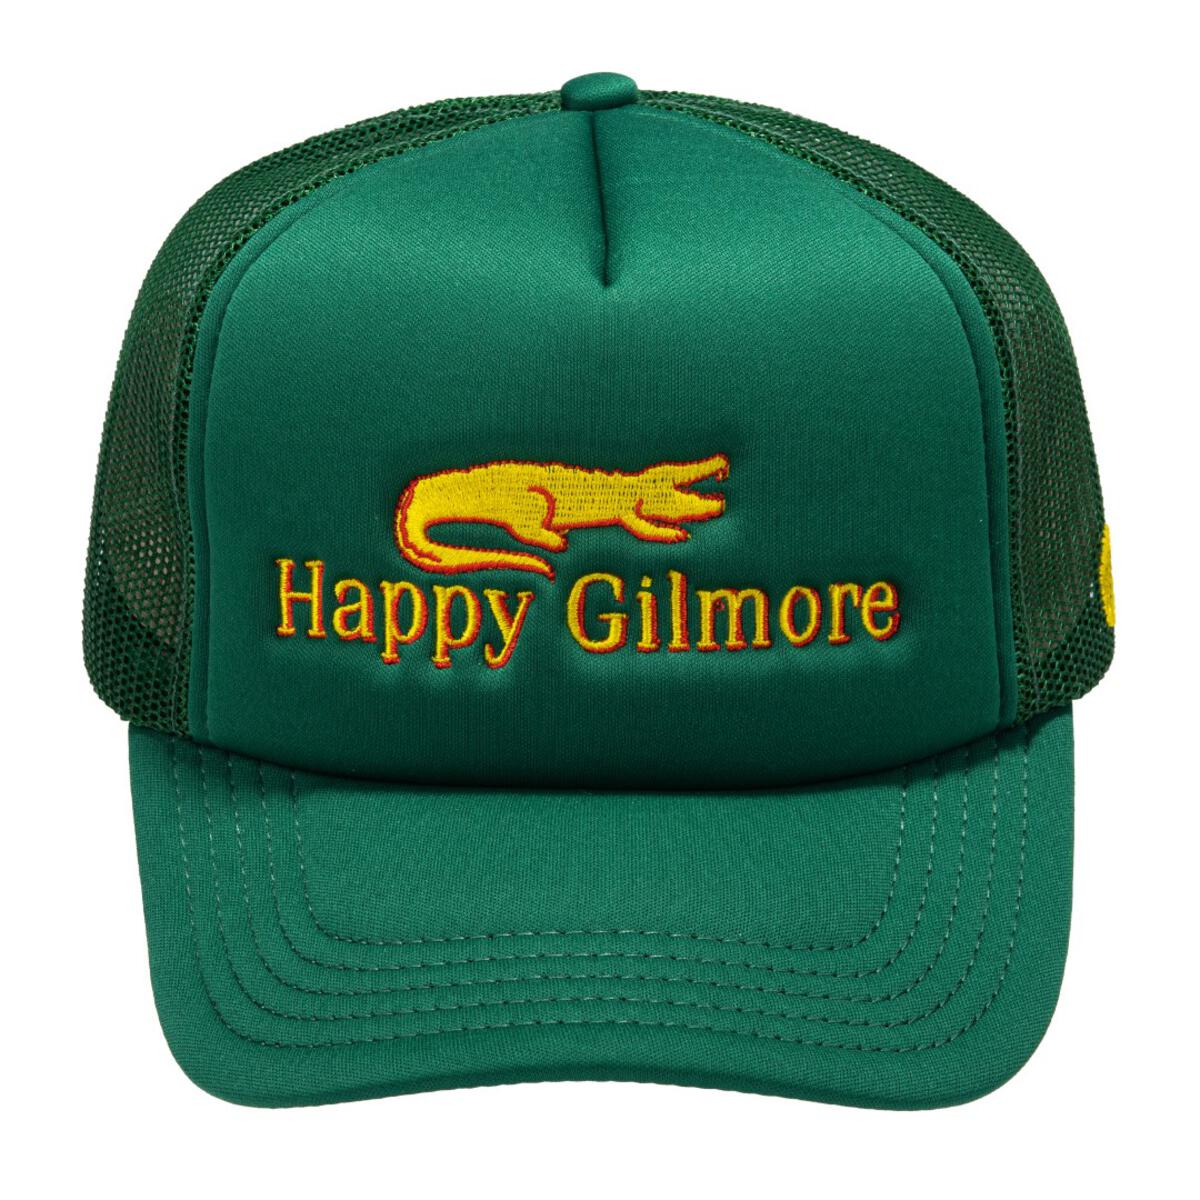 Happy Gilmore - Trucker Hat